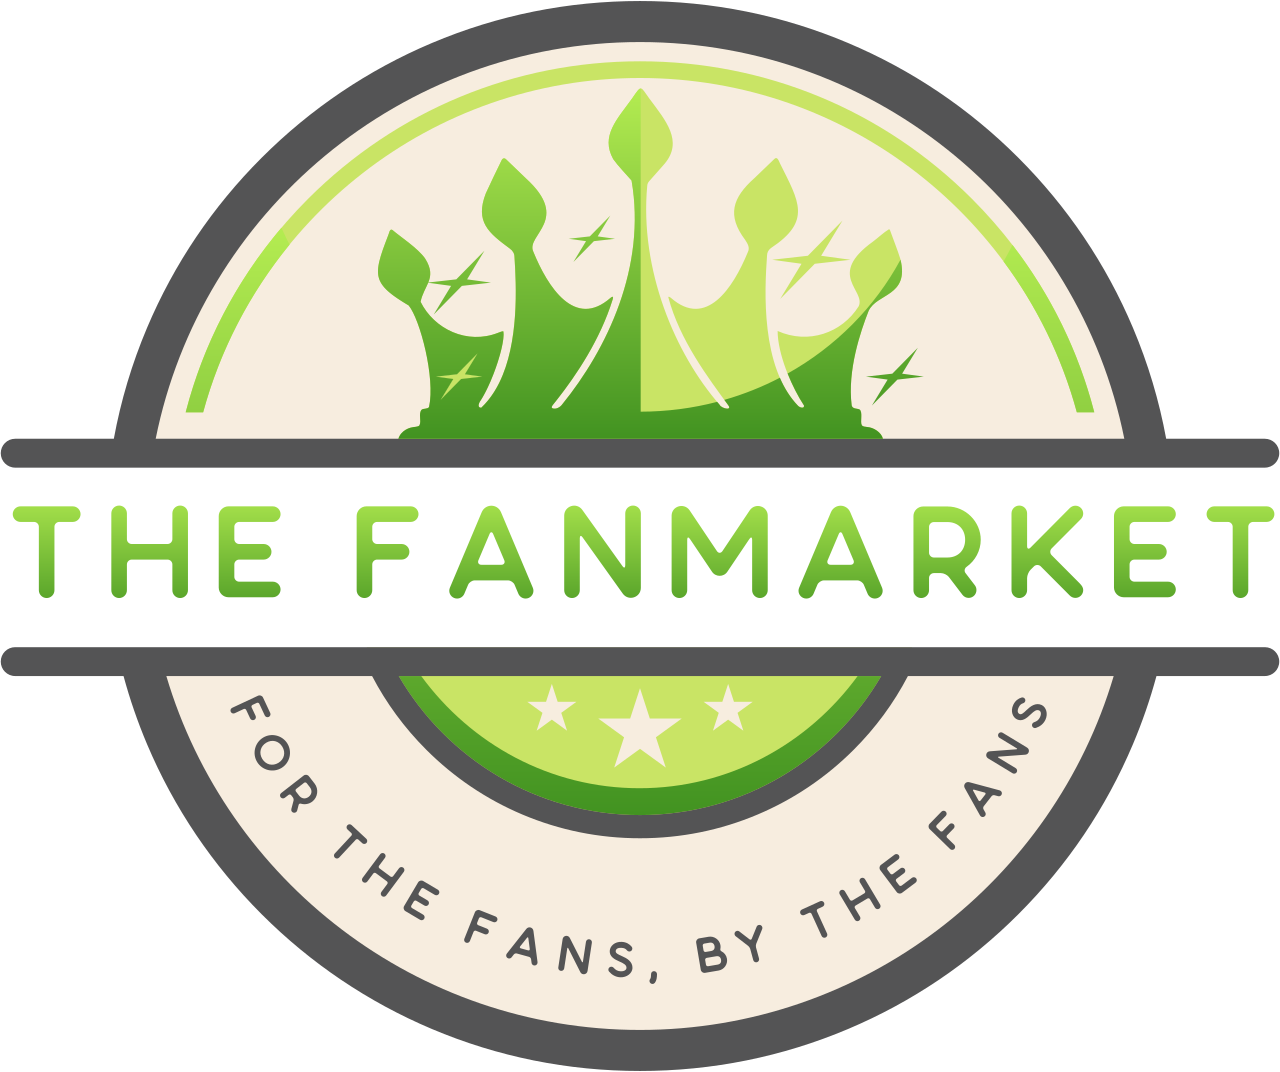  The FanMarket's logo